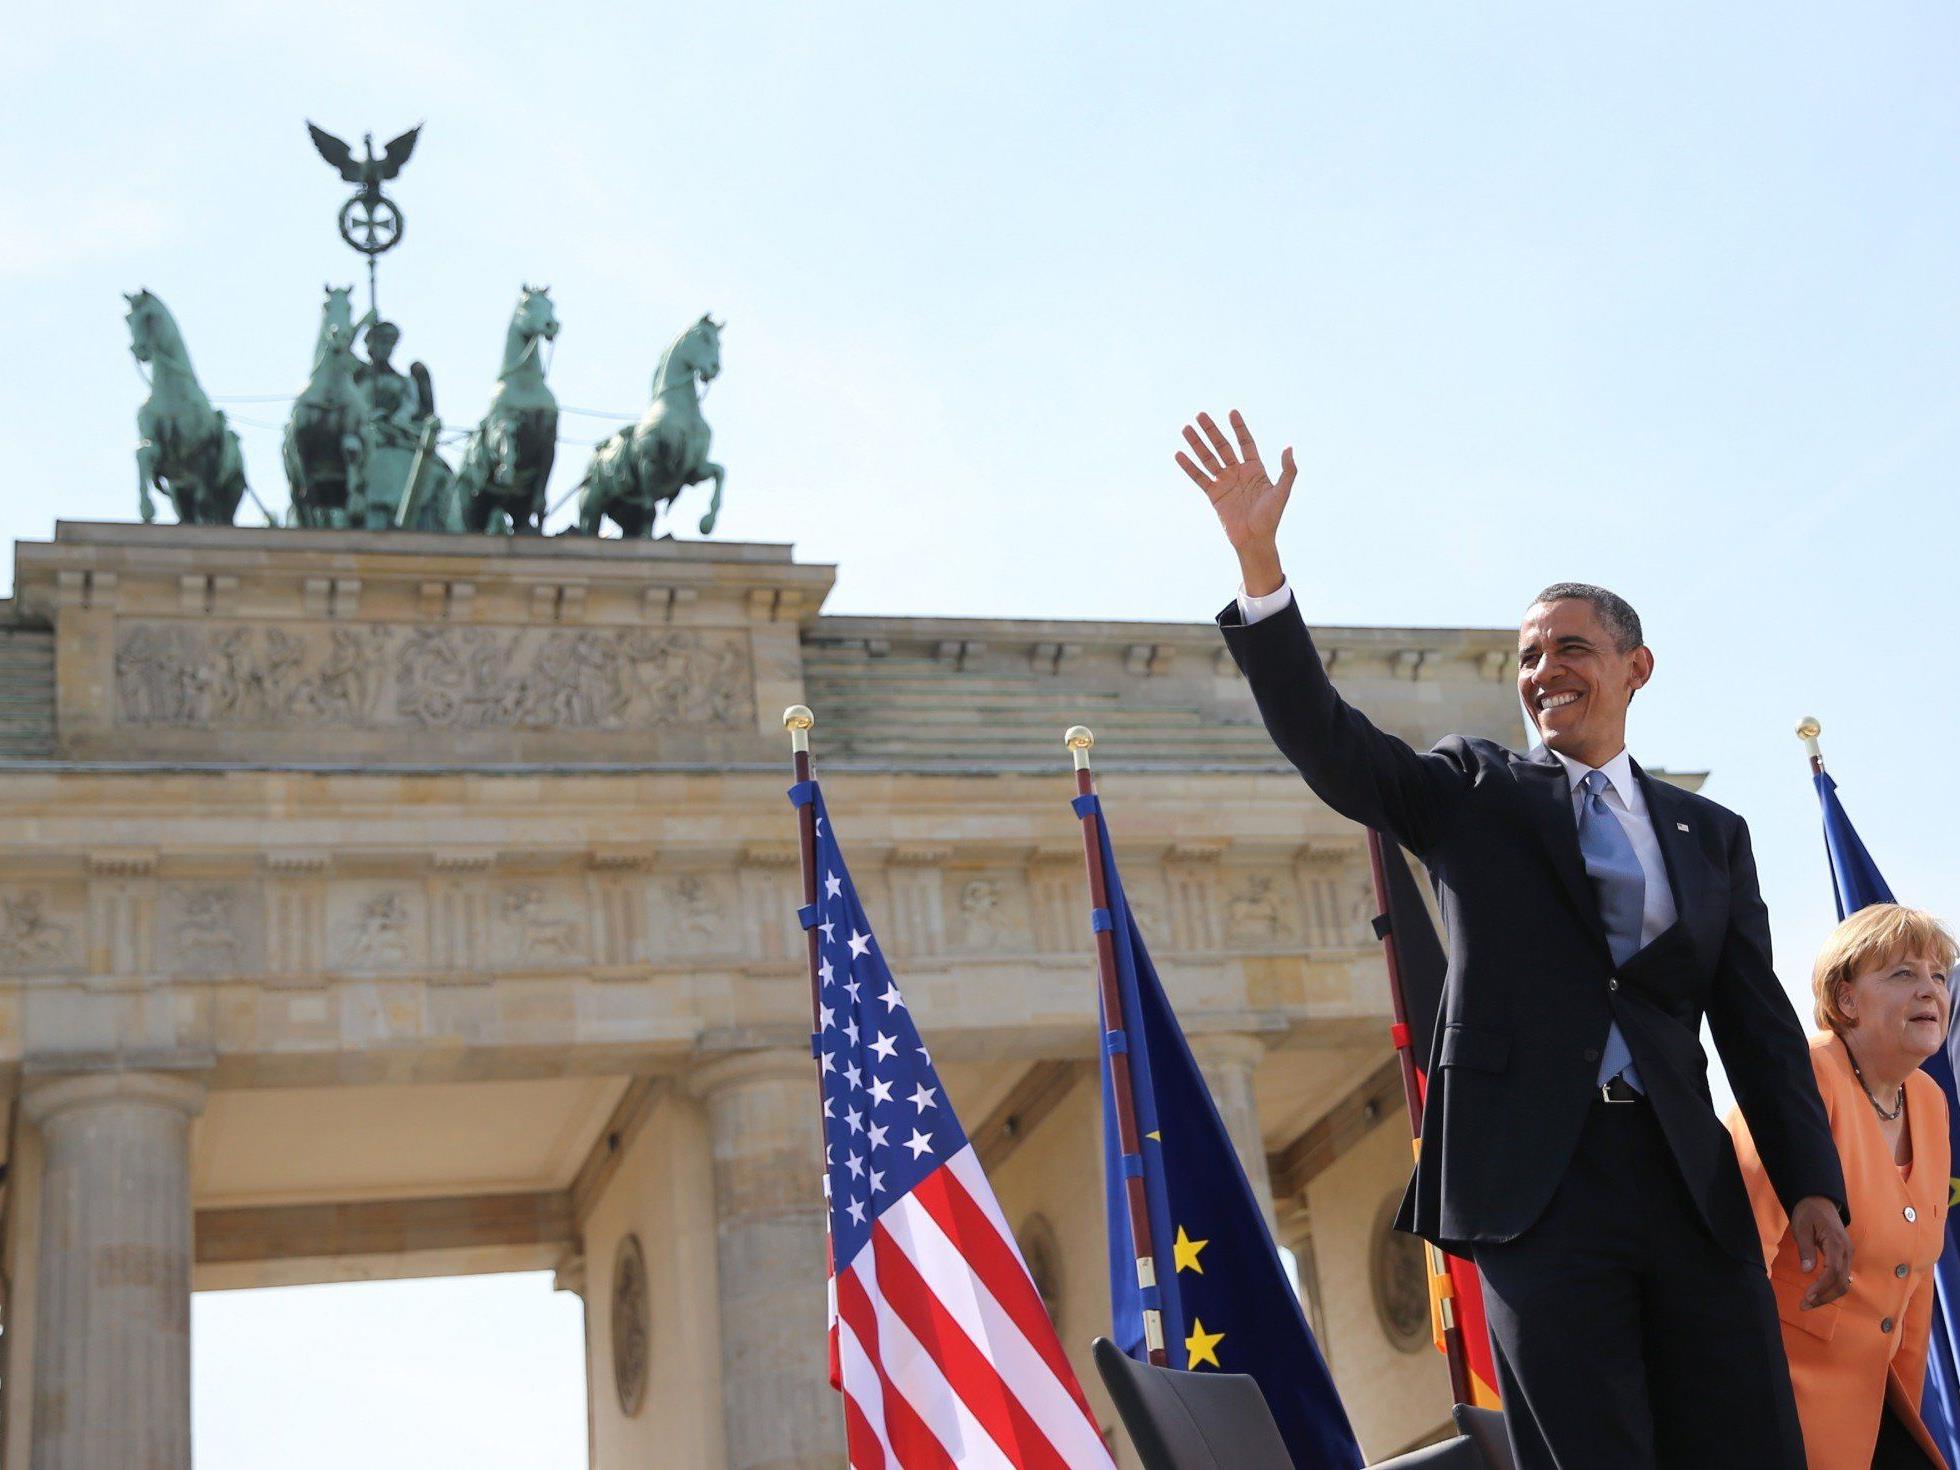 US-Präsident Obama hob zu Beginn seiner Rede hervor, dass der Kampf um Freiheit und Sicherheit anhalte.